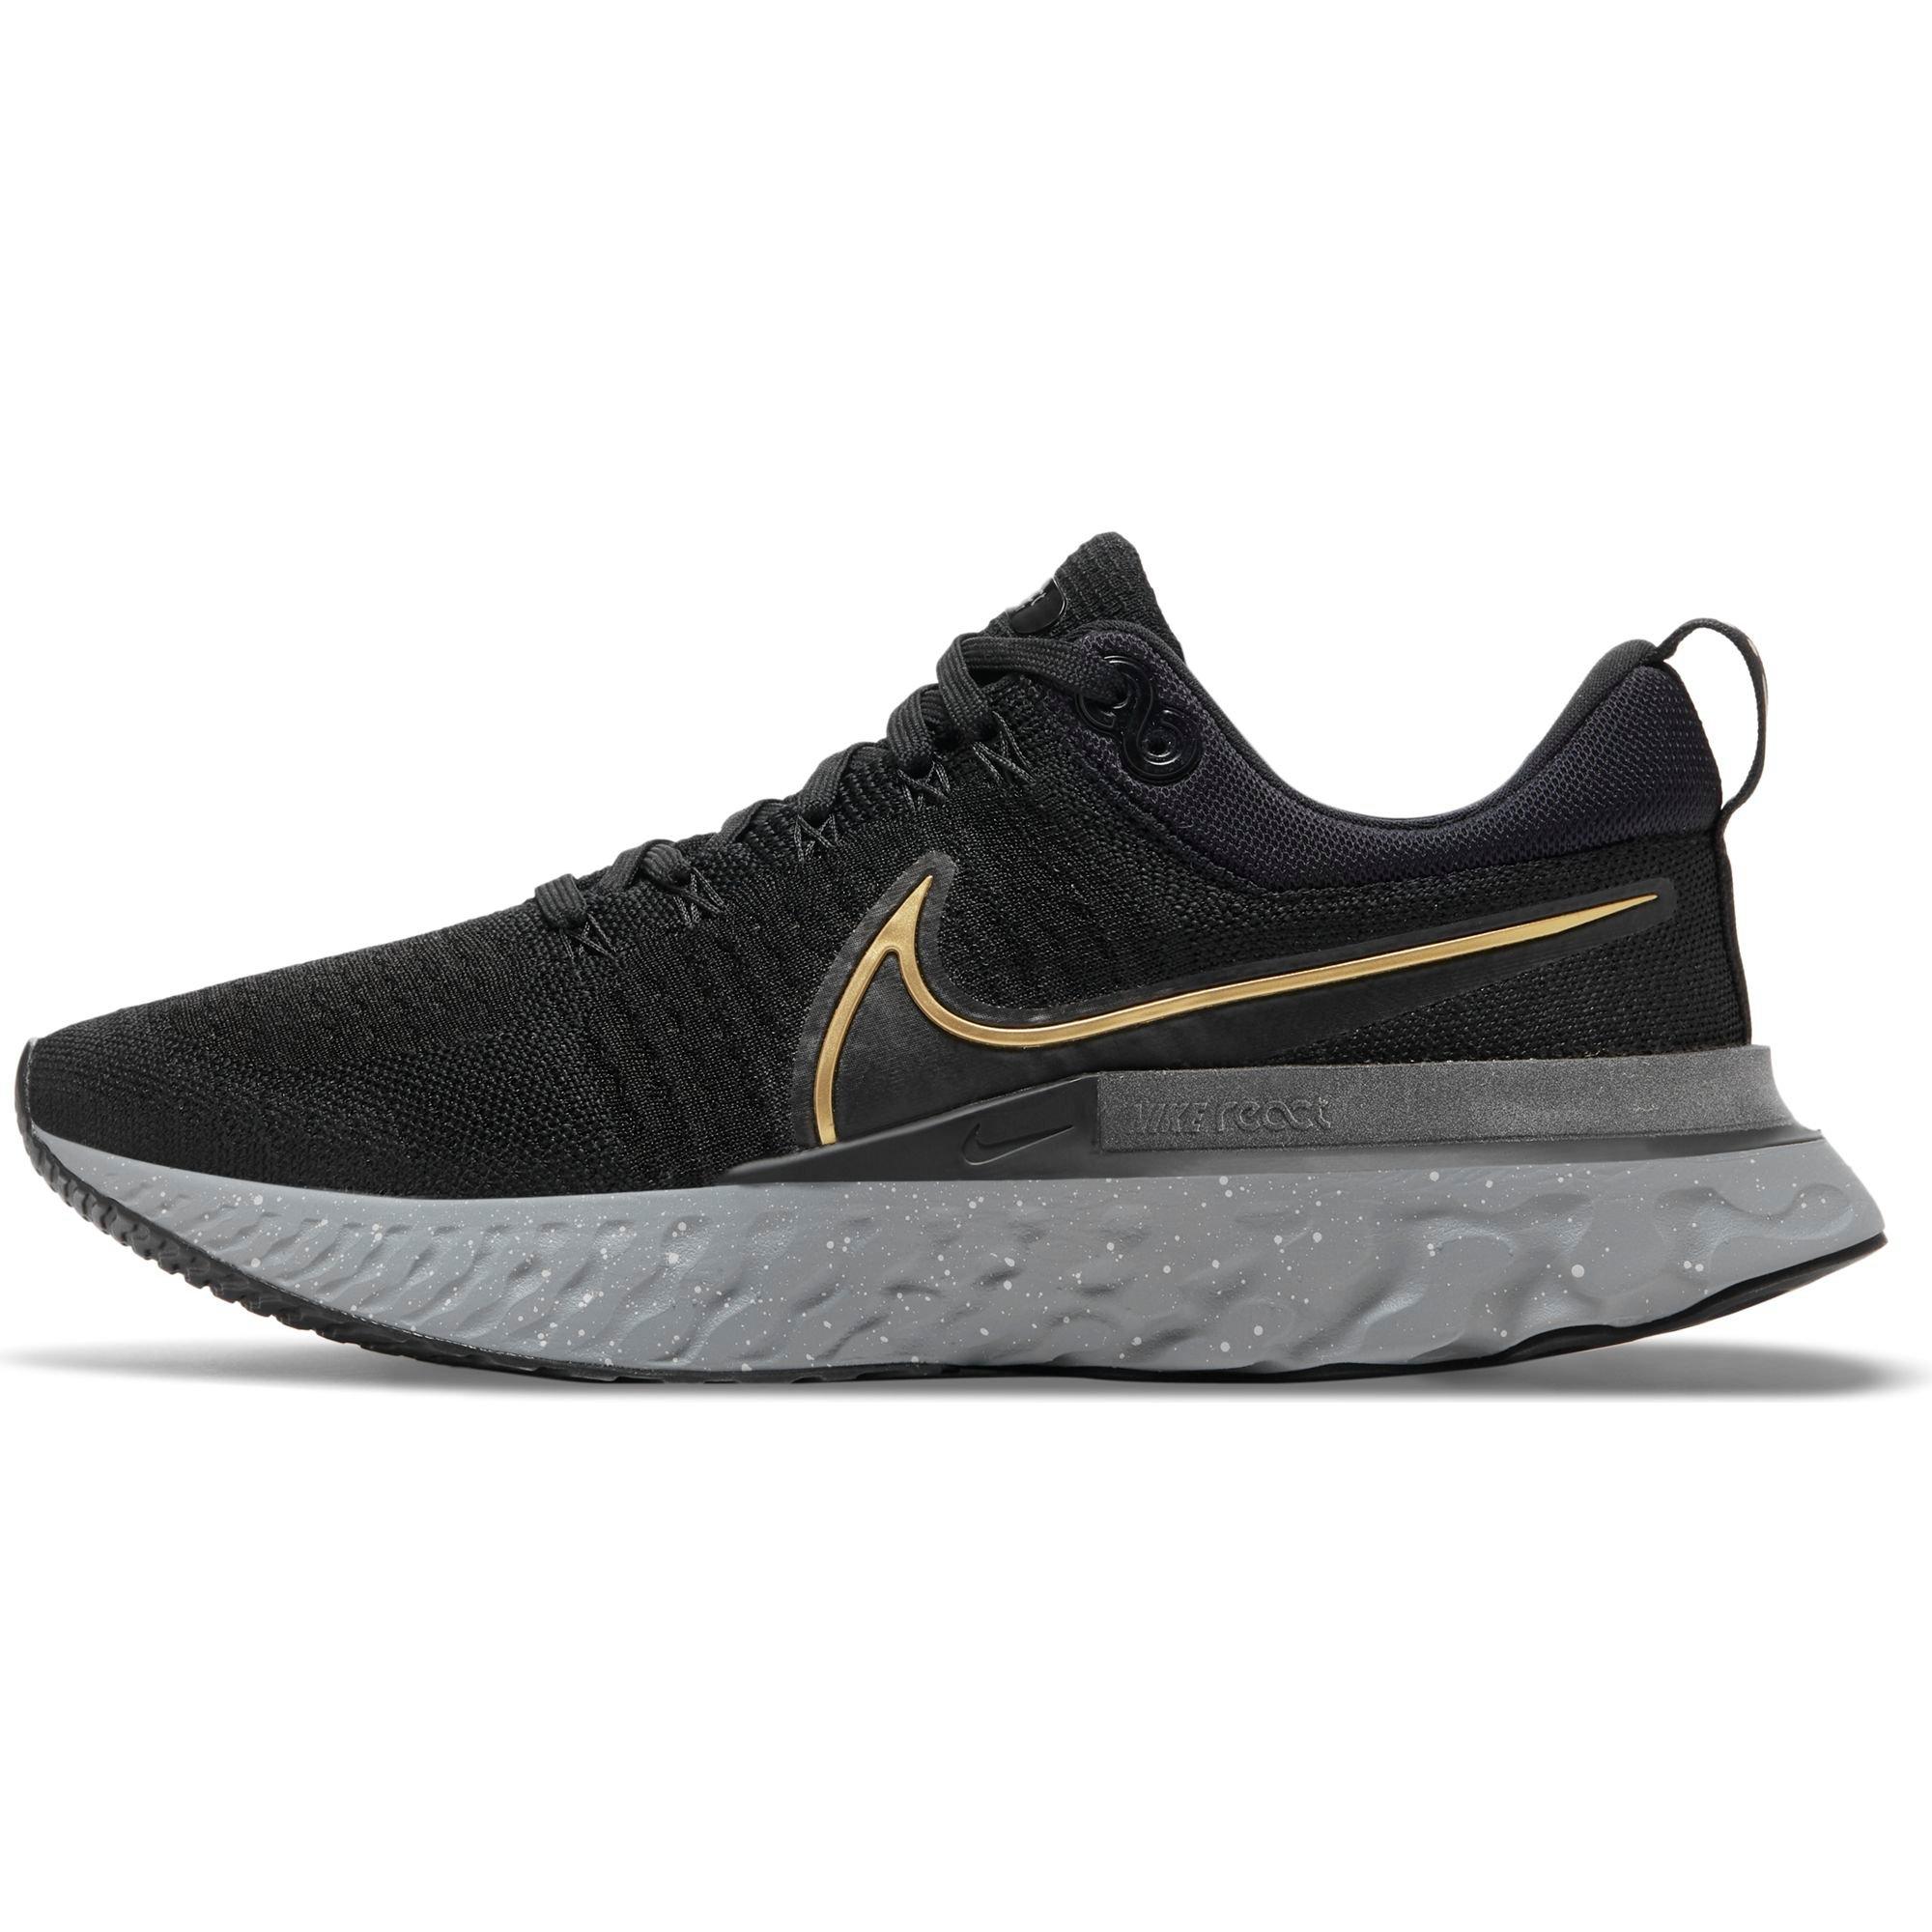 Nike React 2 "Black/Metallic Grey/Grey Fog" Men's Road Running Shoe